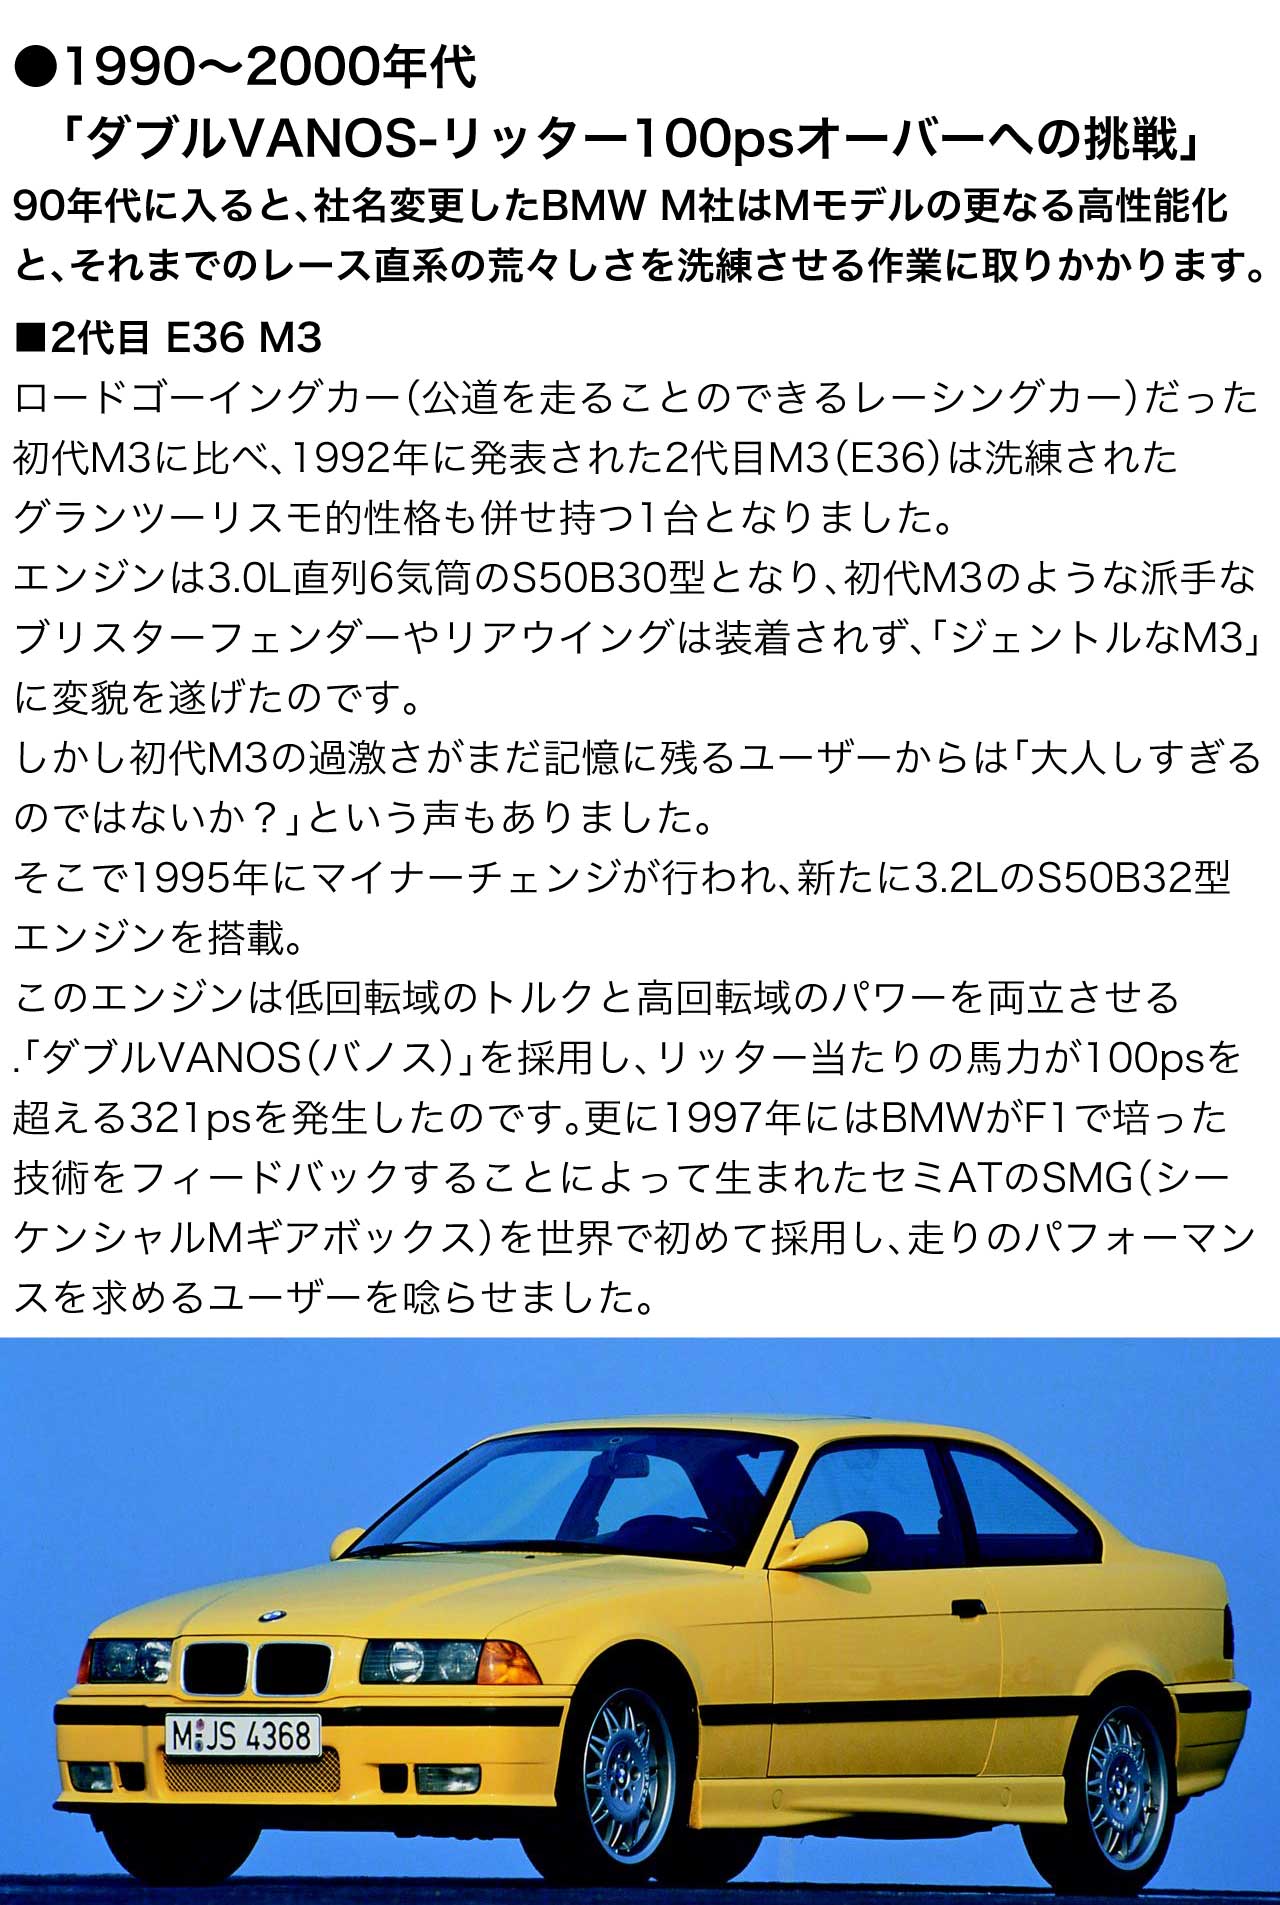 1990～2000年代 ダブルVANOS-リッター100psオーバーへの挑戦 90年代に入ると、社名変更した BMW M社 はMモデルの更なる高性能化と、それまでのレース直系の荒々しさを洗練させる作業に取りかかります。2代目 E36 M3 ロードゴーイングカー（公道を走ることのできるレーシングカー）だった 初代M3 に比べ、1992年に発表された 2代目M3 E36 は洗練されたグランツーリスモ的性格も併せ持つ1台となりました。エンジンは3.0L直列6気筒の S50B30 型 となり、初代M3のような派手なブリスターフェンダーやリアウイングは装着されず、「ジェントルなM3」に変貌を遂げたのです。しかし初代M3の過激さがまだ記憶に残るユーザーからは「大人しすぎるのではないか？」という声もありました。そこで1995年にマイナーチェンジが行われ、新たに3.2Lの S50B32 型 エンジンを搭載。このエンジンは低回転域のトルクと高回転域のパワーを両立させる.「ダブルVANOS（バノス）」を採用し、リッター当たりの馬力が100psを超える321psを発生したのです。更に1997年にはBMWがF1で培った技術をフィードバックすることによって生まれたセミATのSMG（シーケンシャルMギアボックス）を世界で初めて採用し、走りのパフォーマンスを求めるユーザーを唸らせました。